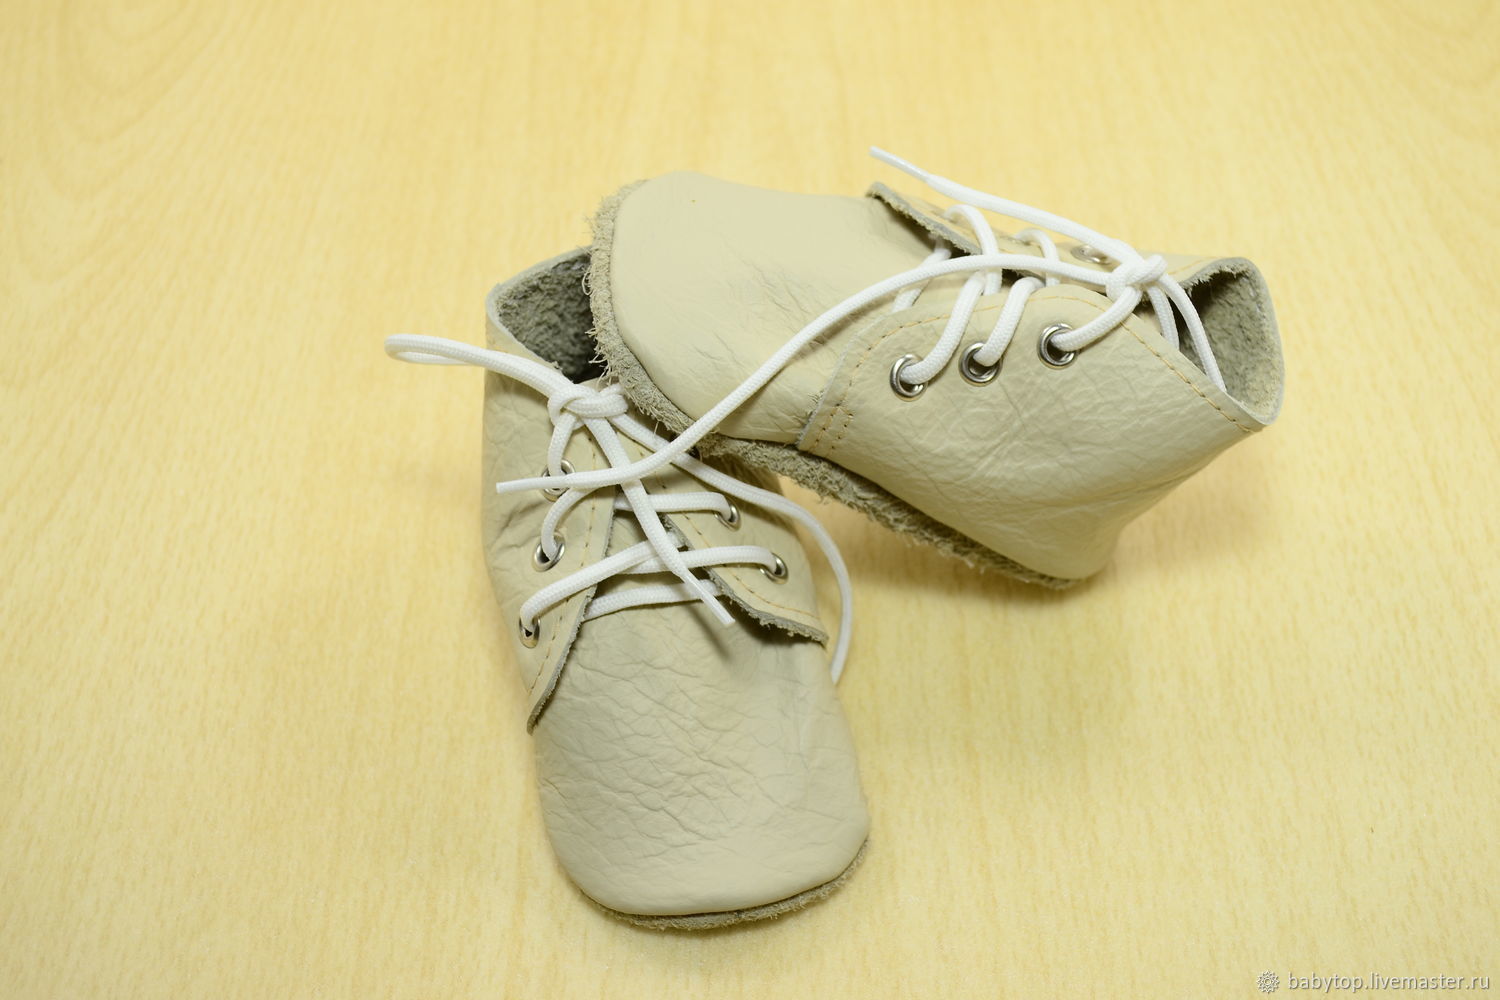 Первая обувь для малыша